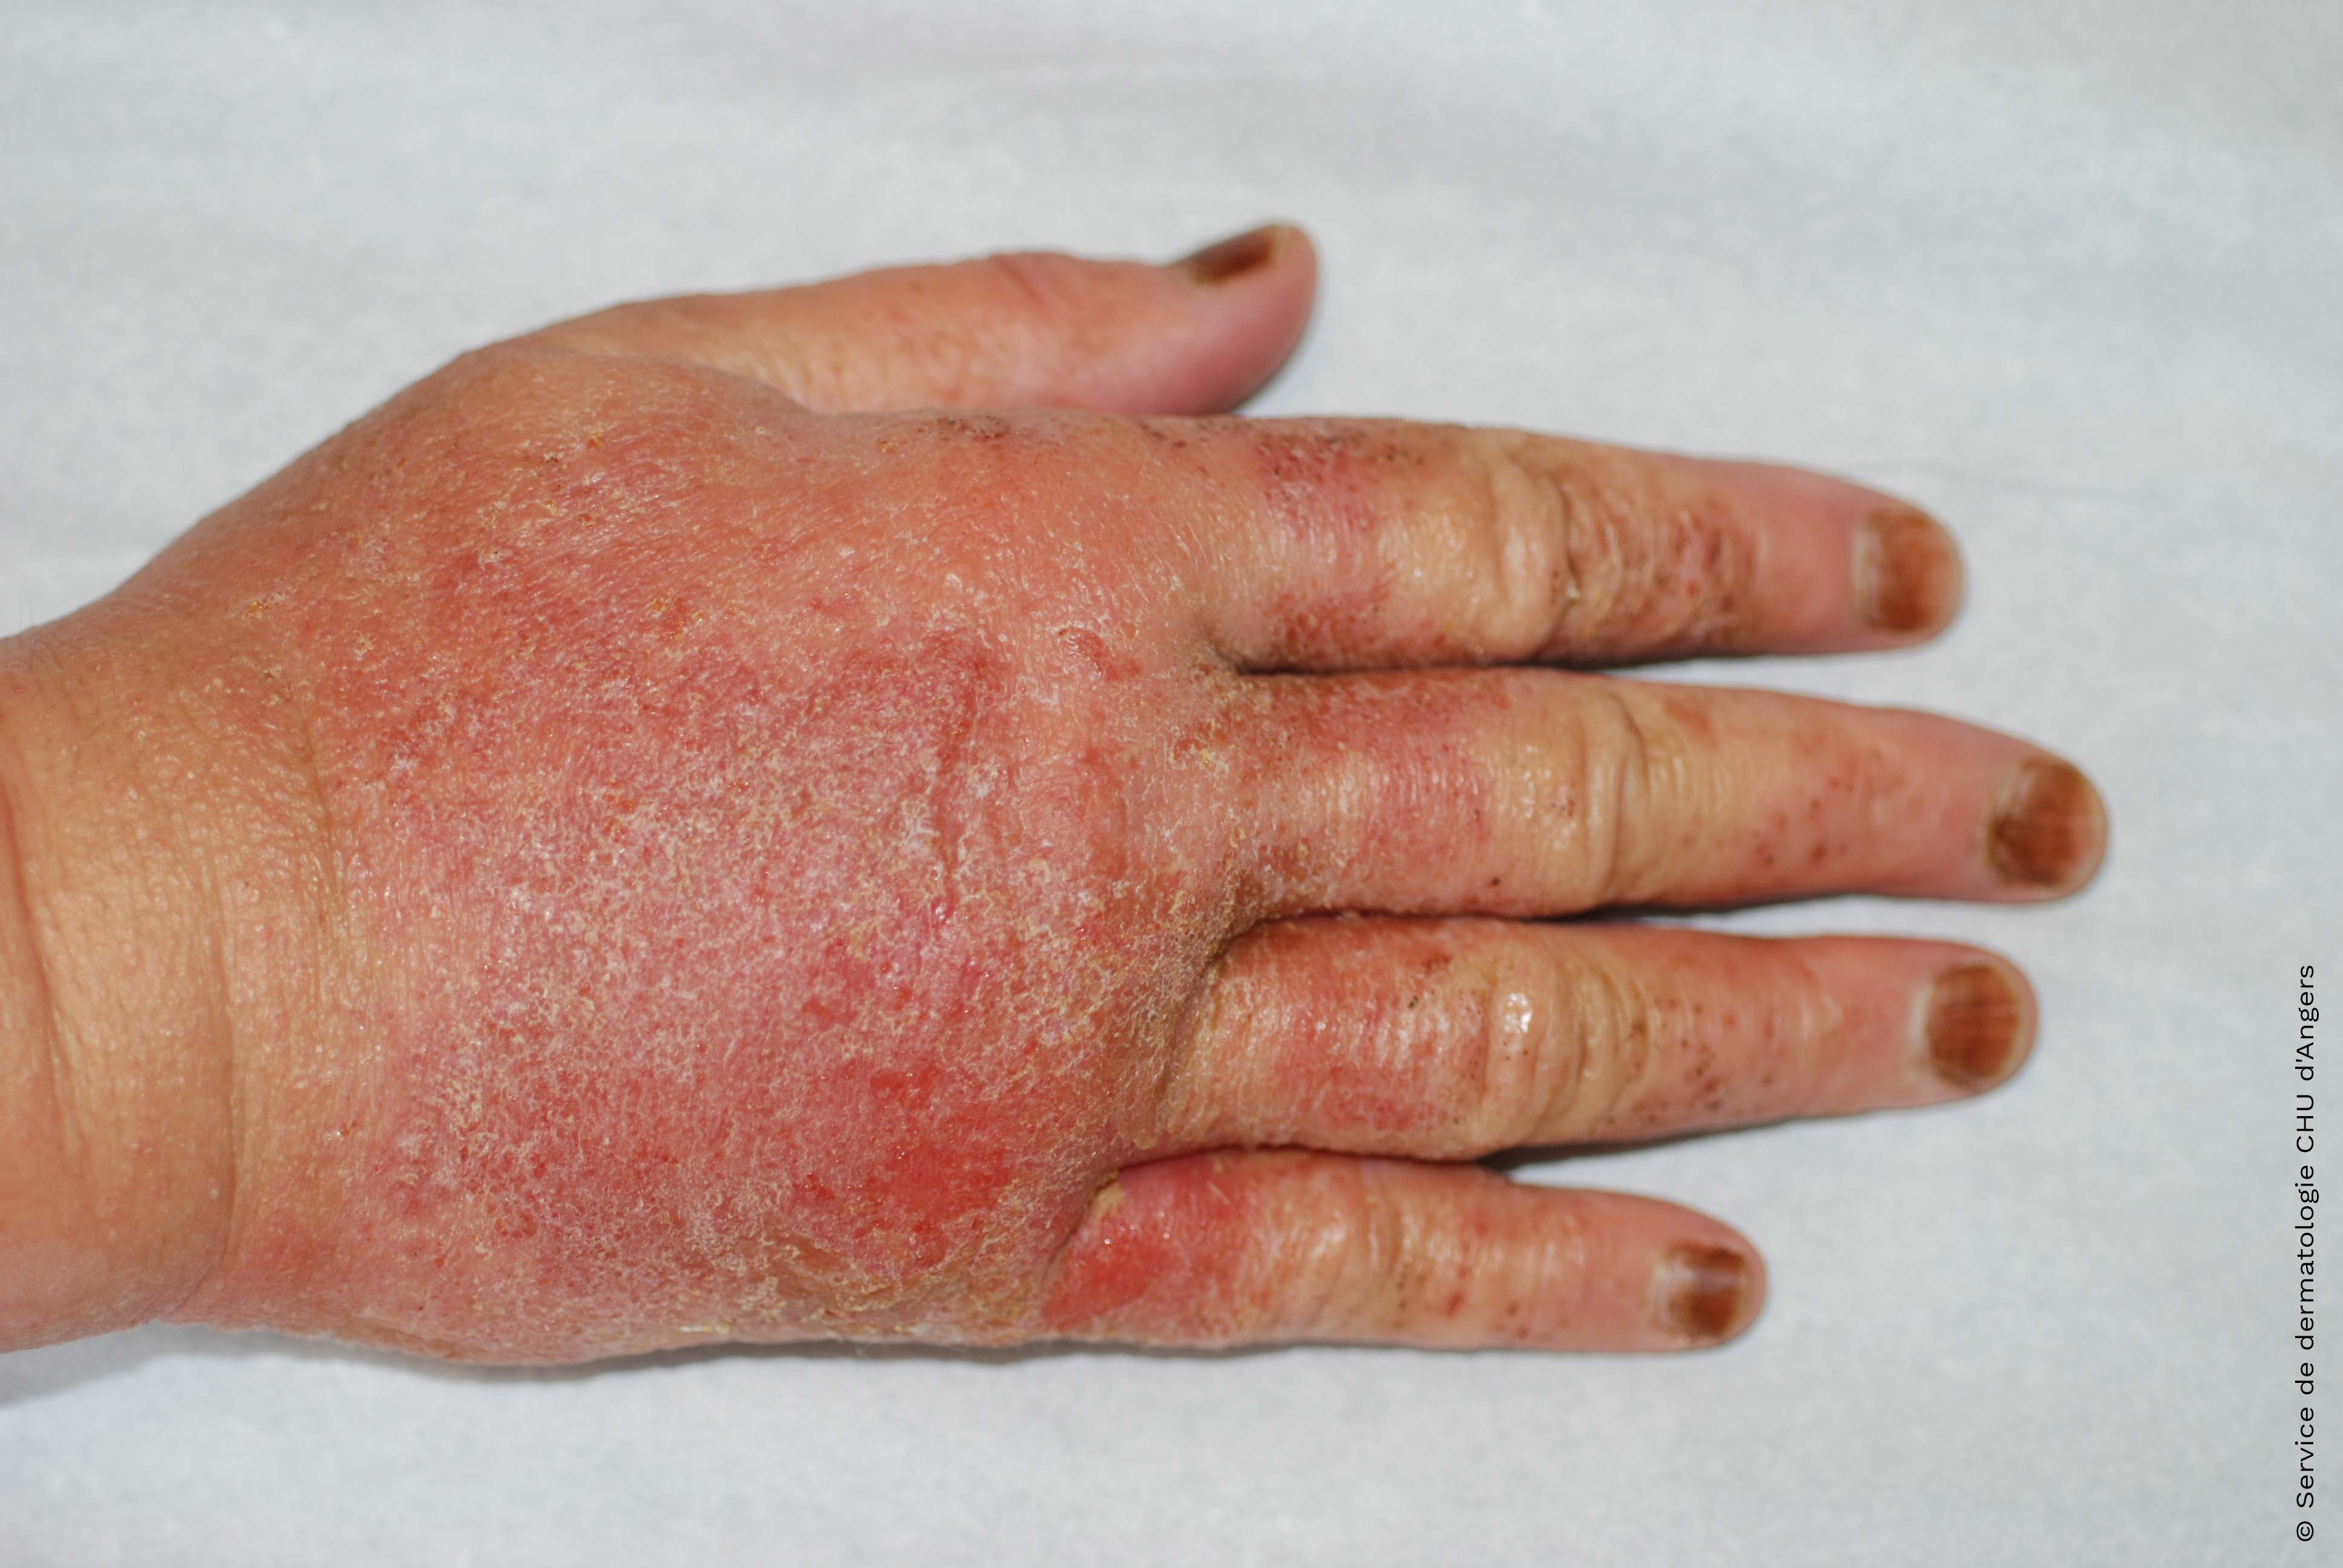 Eczema alérgico agudo das mãos